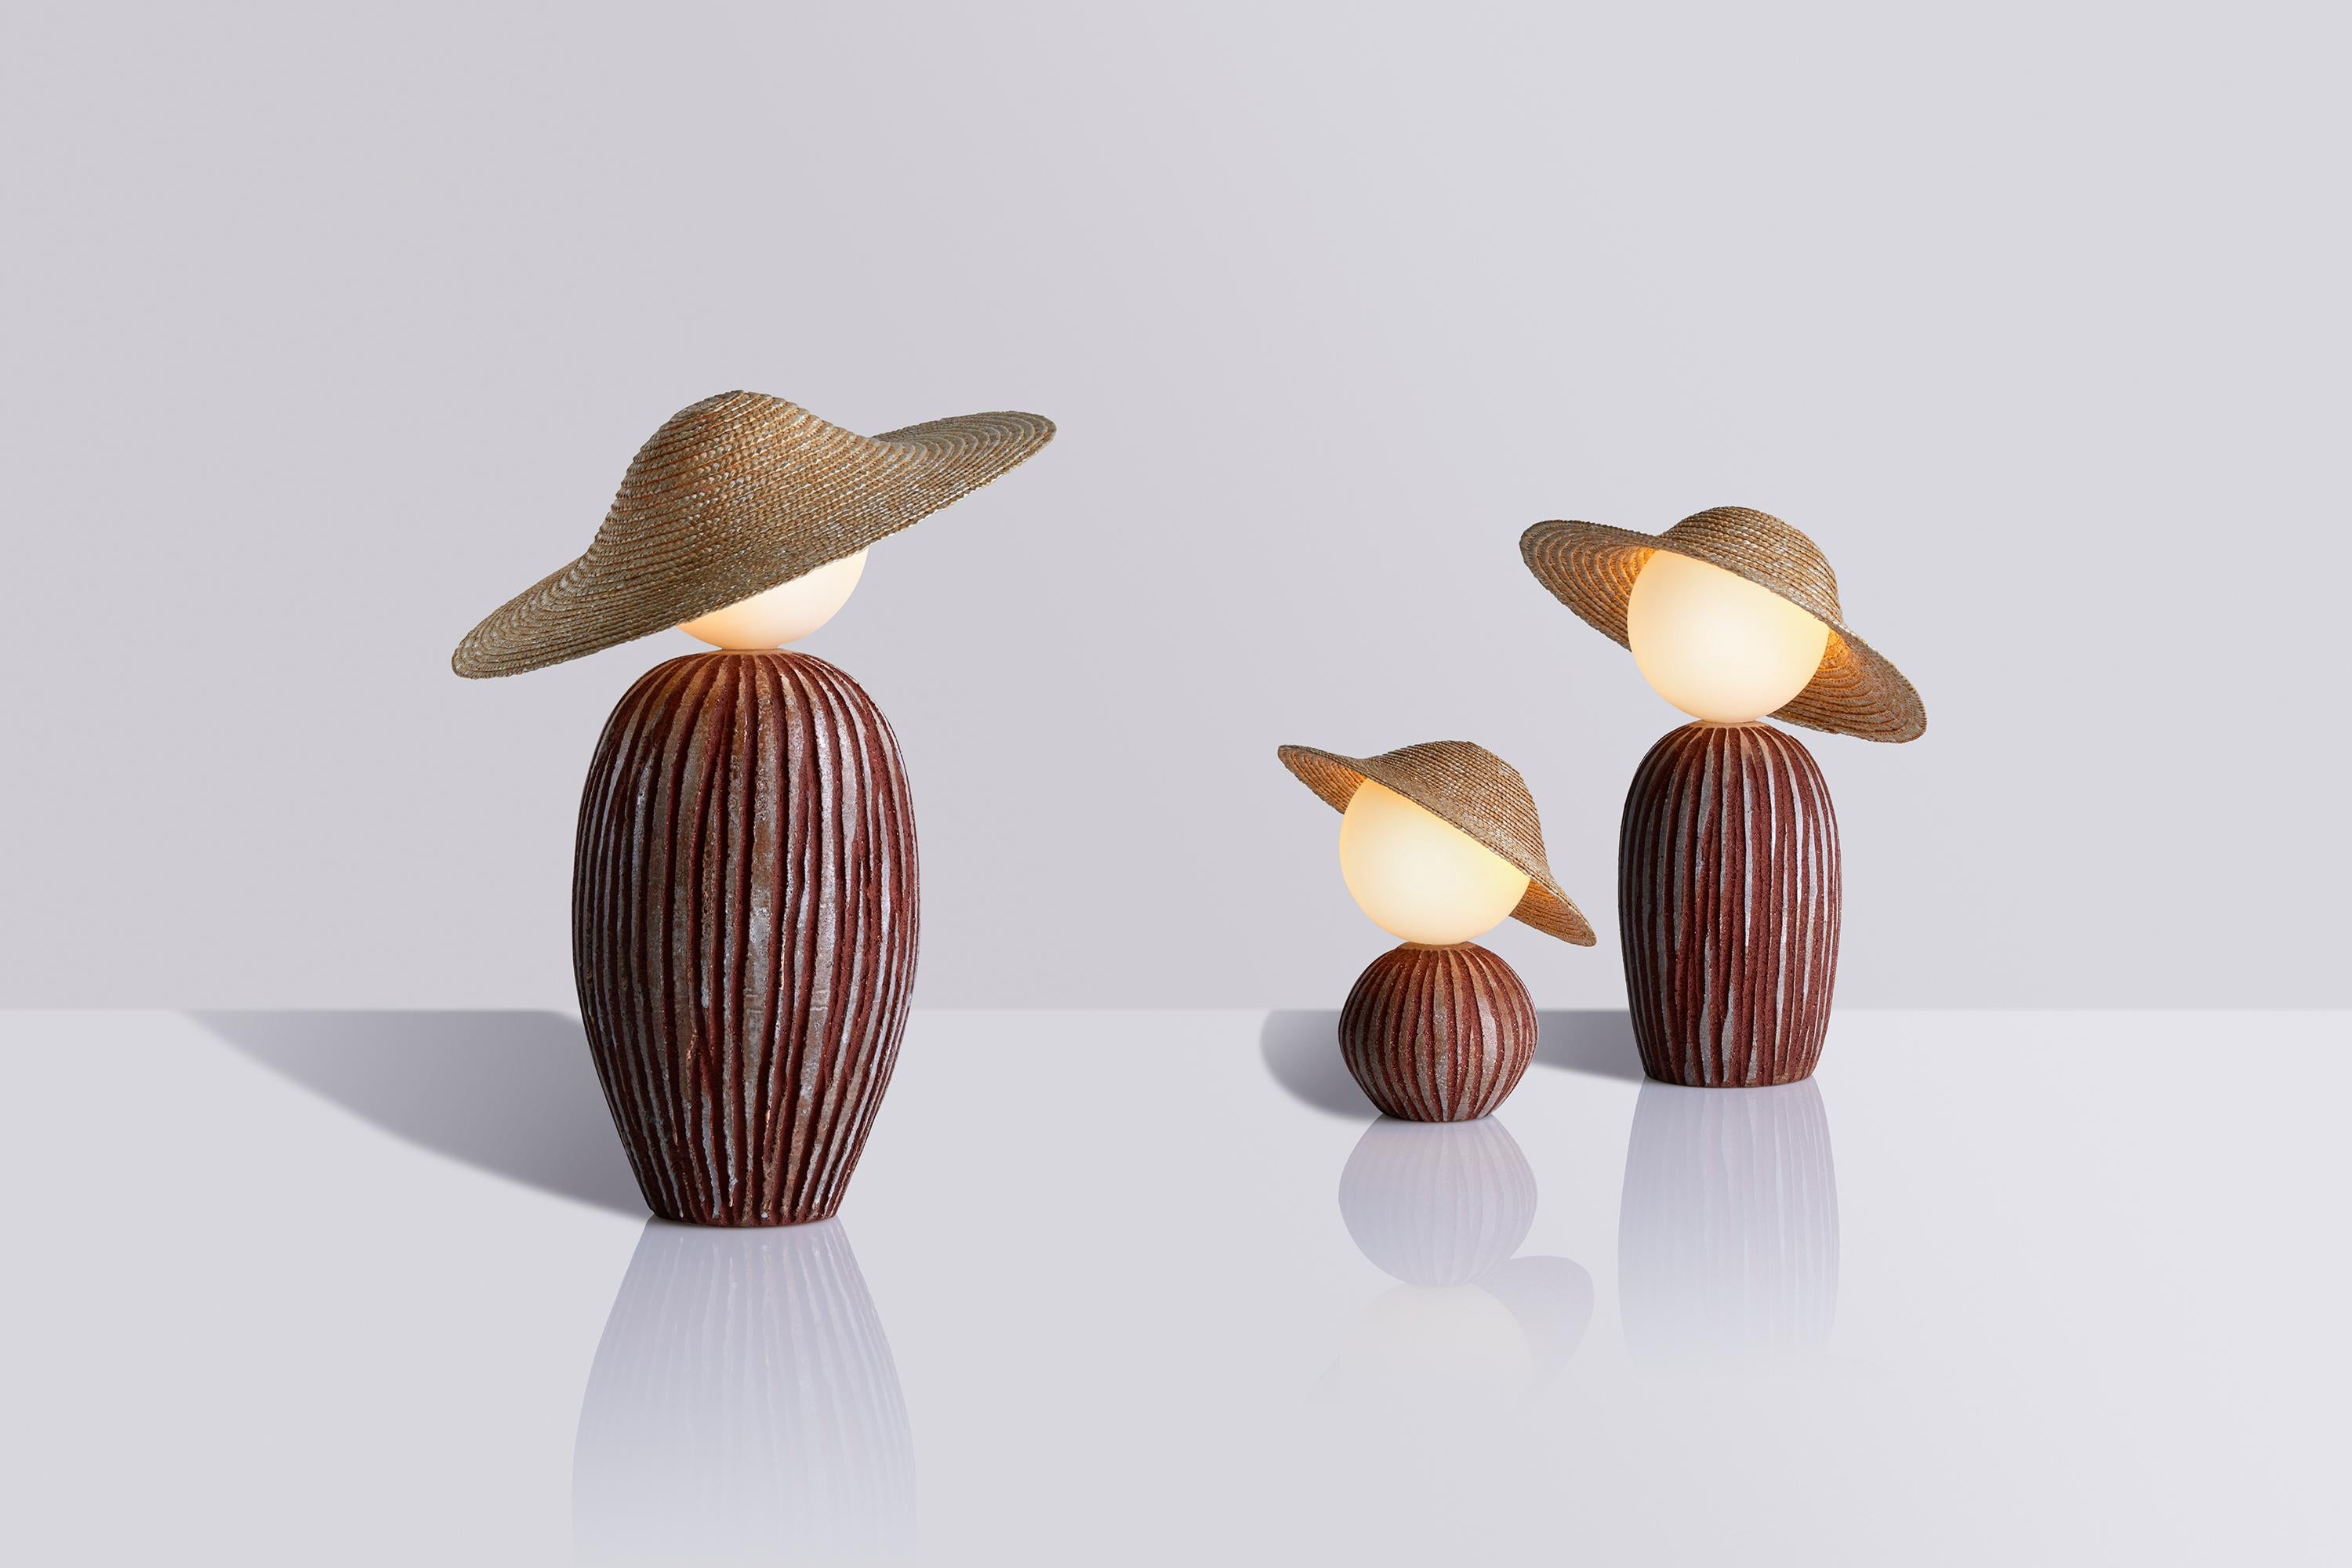 Théros Ceramic Limited Edition est le fruit de la rencontre créative de deux créateurs : le designer Aristotelis Barakos et le céramiste Giannis Zois.
Elle est basée sur le concept de la série d'objets d'éclairage Théros conçue par Aristotelis